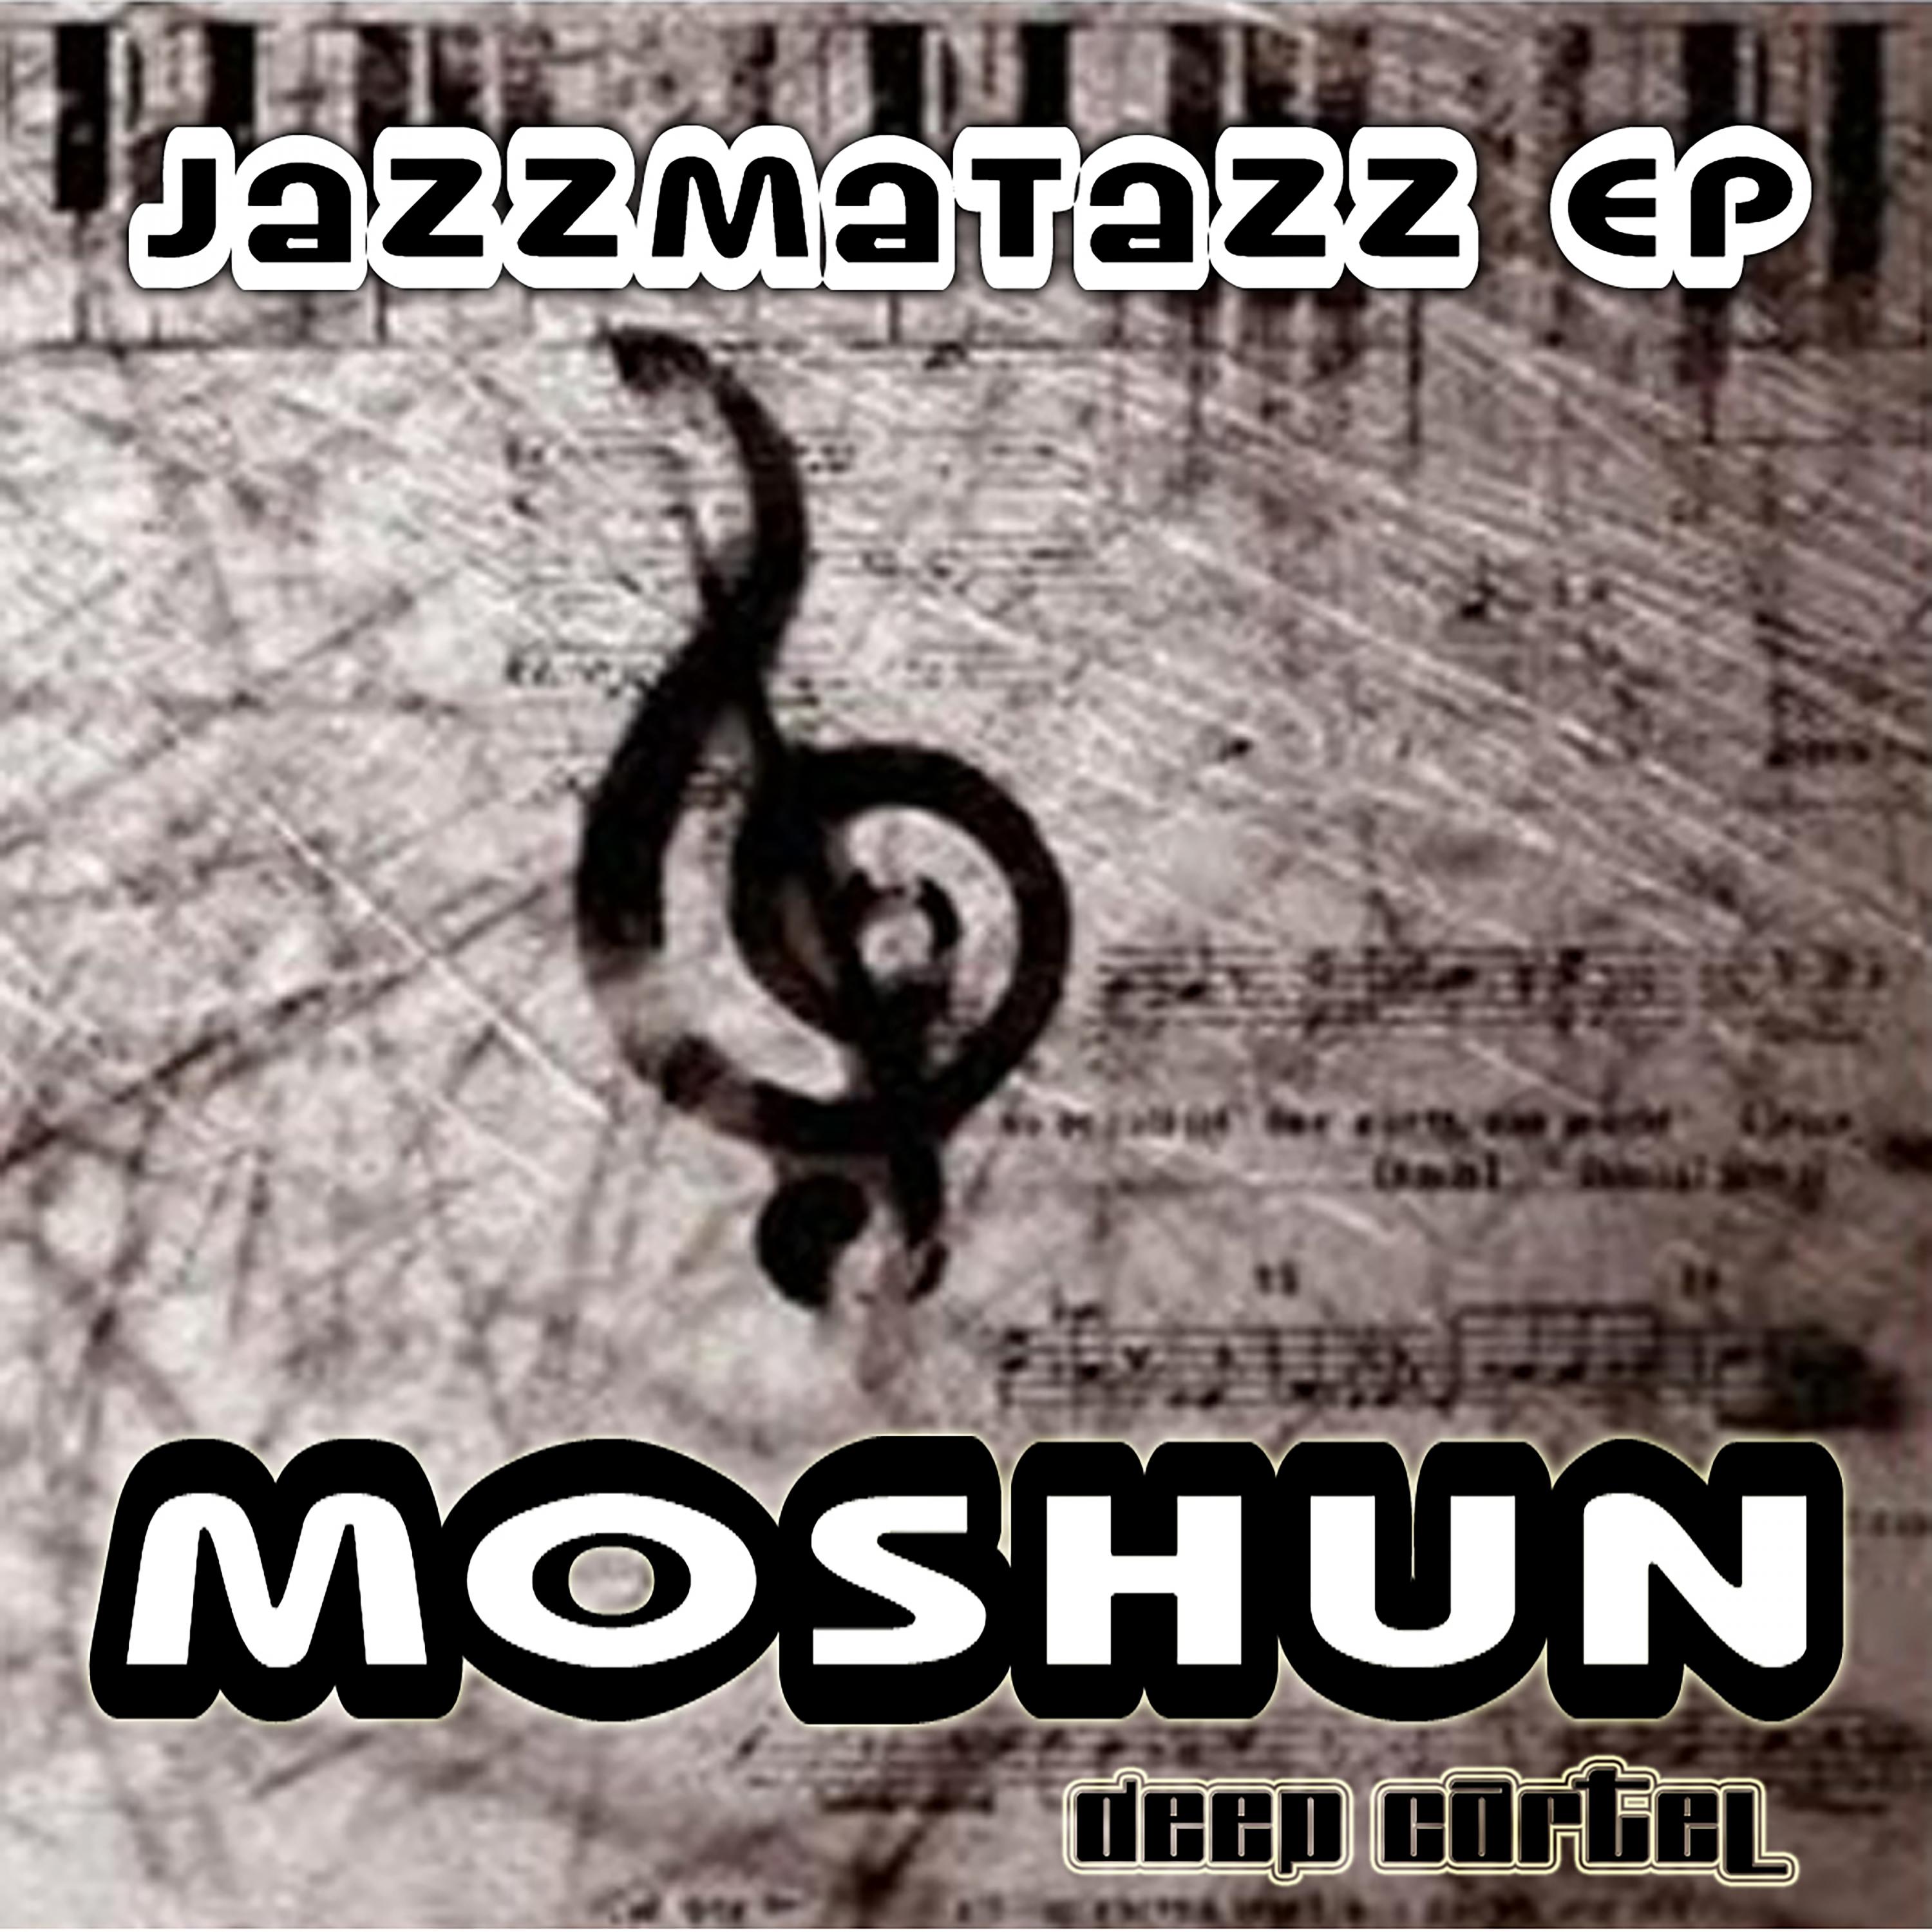 Moshun - Jazzmatazz Dub (Original Mix)